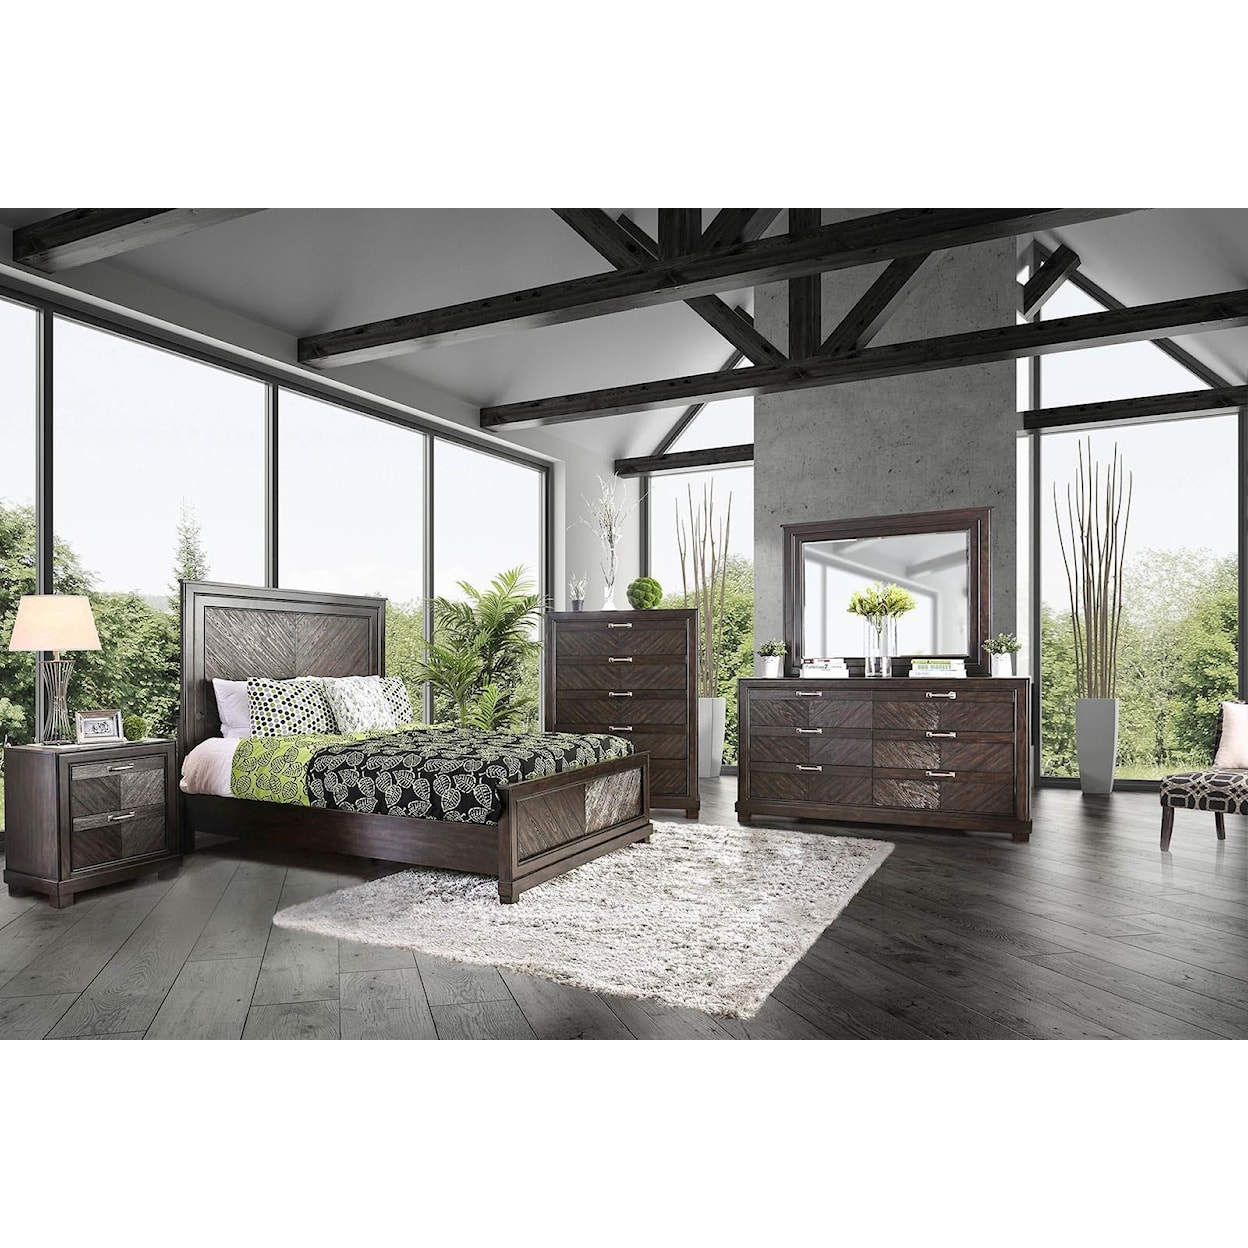 Furniture of America ARGYROS King Bedroom Group